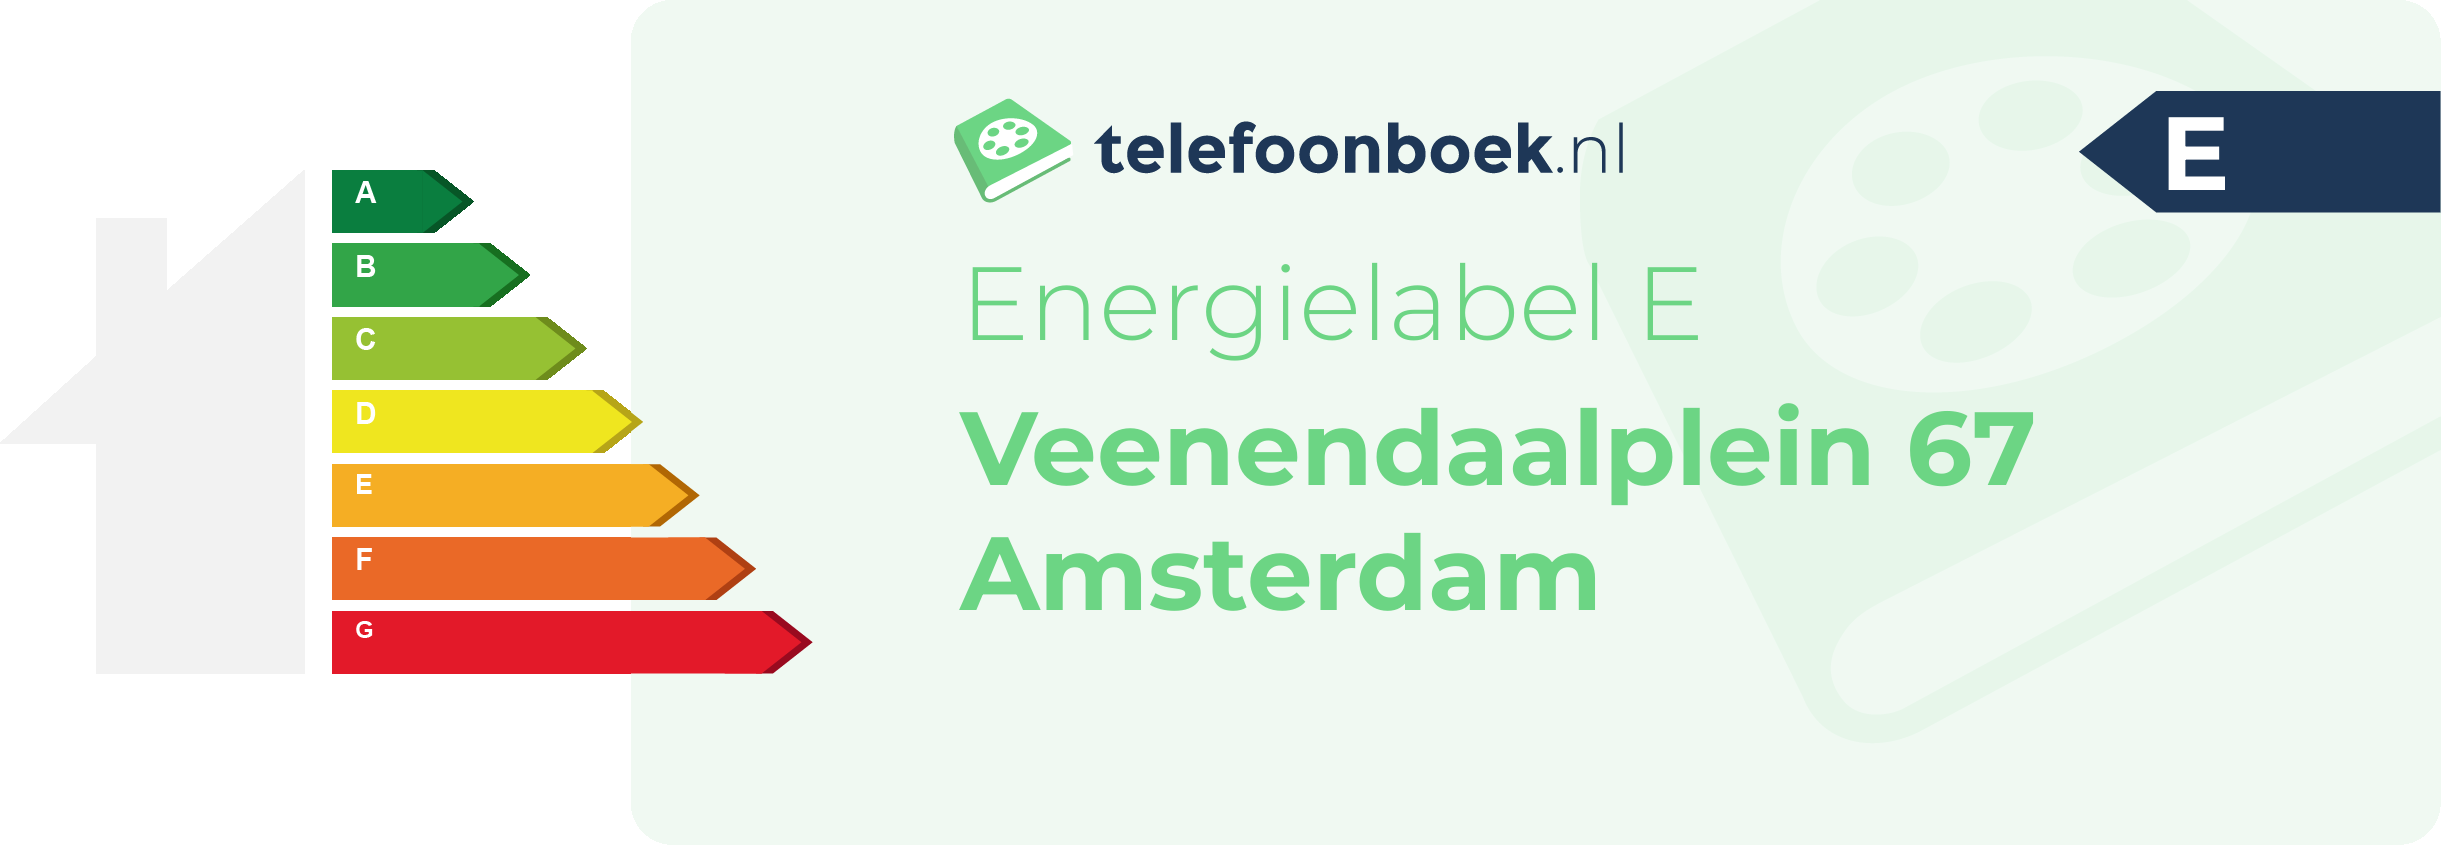 Energielabel Veenendaalplein 67 Amsterdam